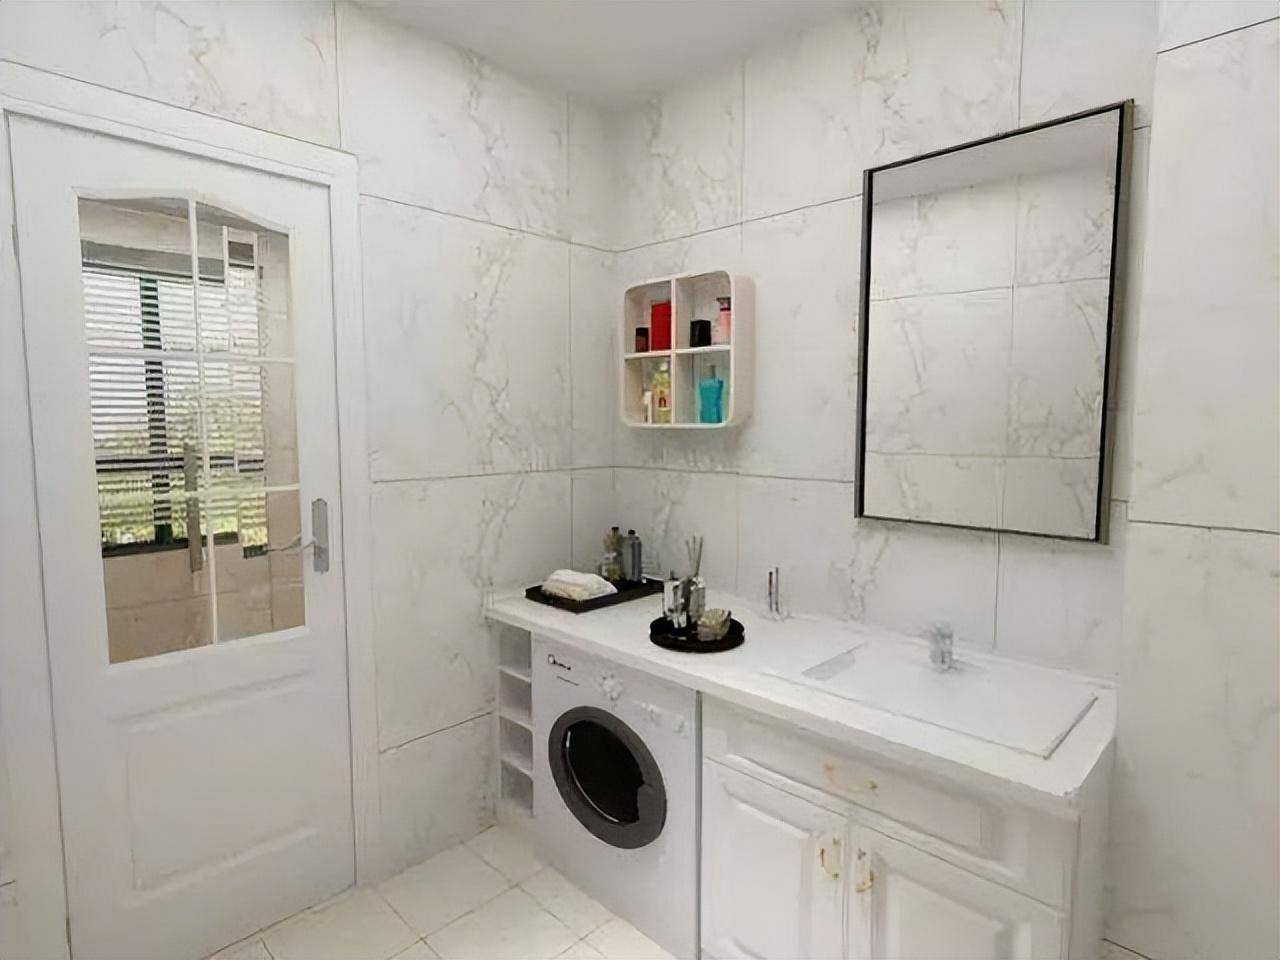 卫生间洗衣机摆放设计效果图,小空间的完美利用,不拥挤又美观